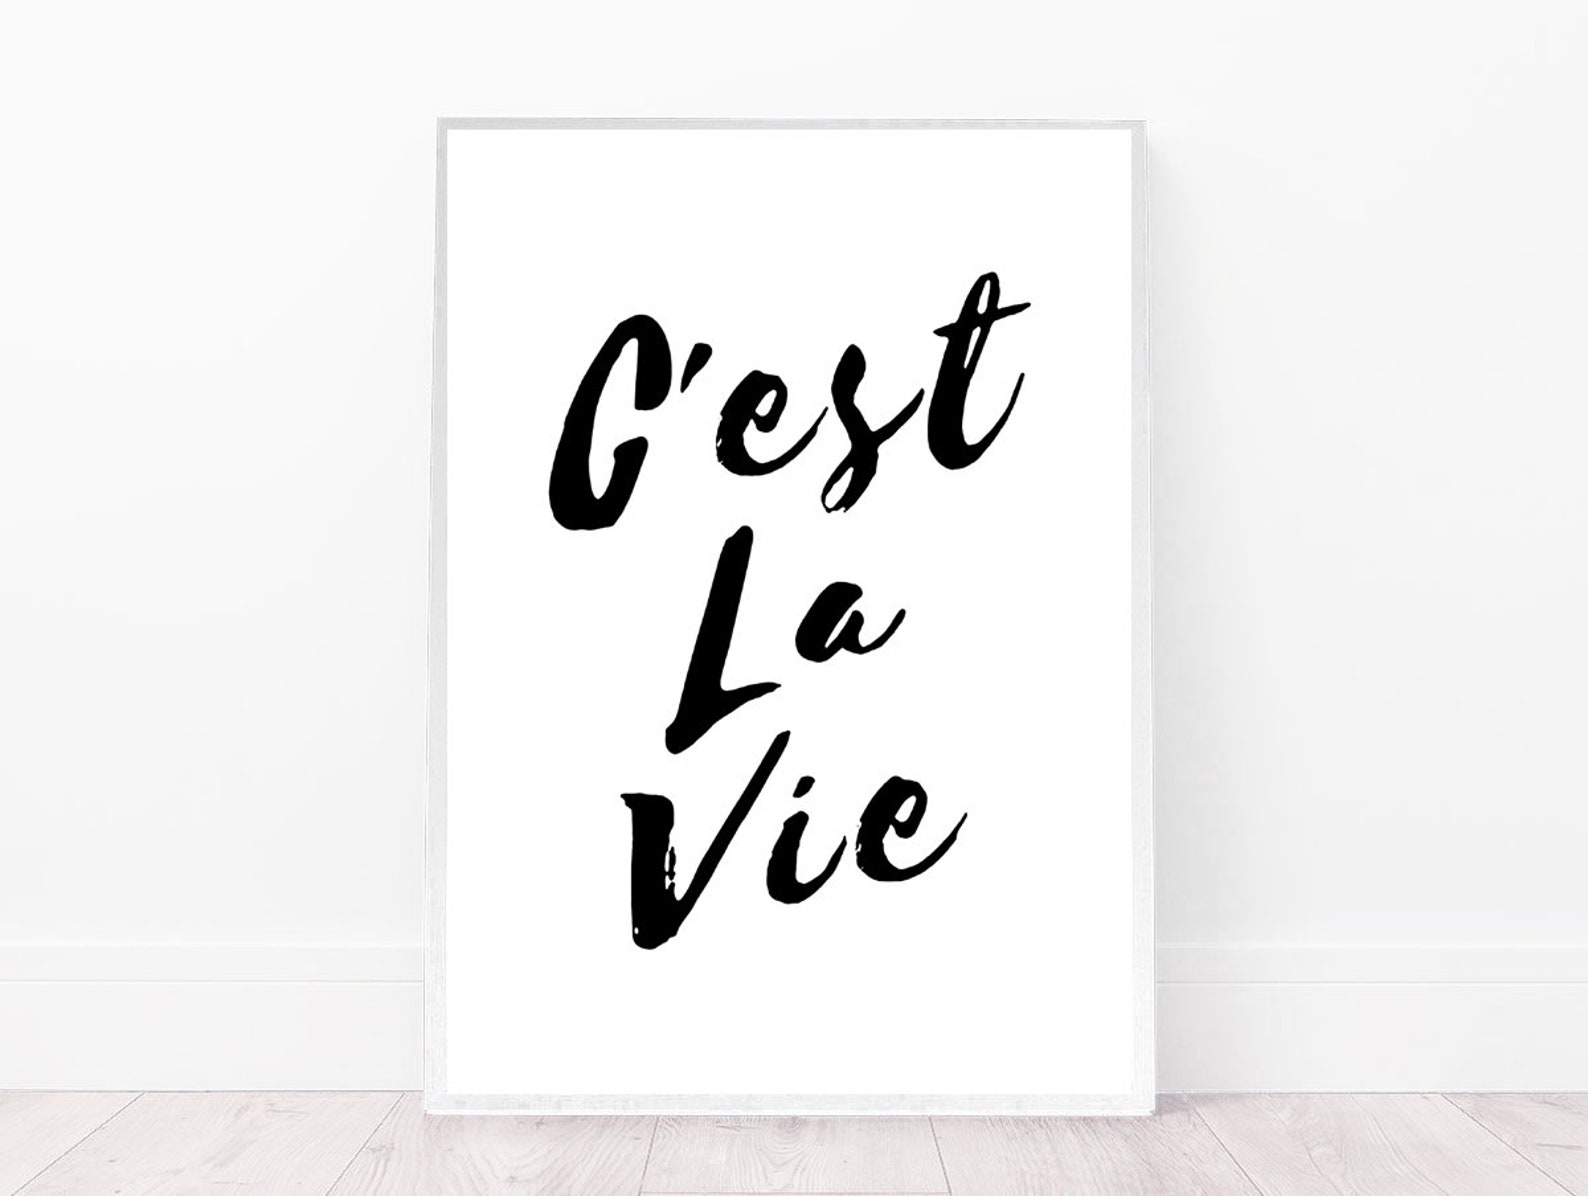 Се ля ви на русском. C'est la vie. C`est la vie эскиз. C'est la vie перевод. C' est la vie картинки в рамке.